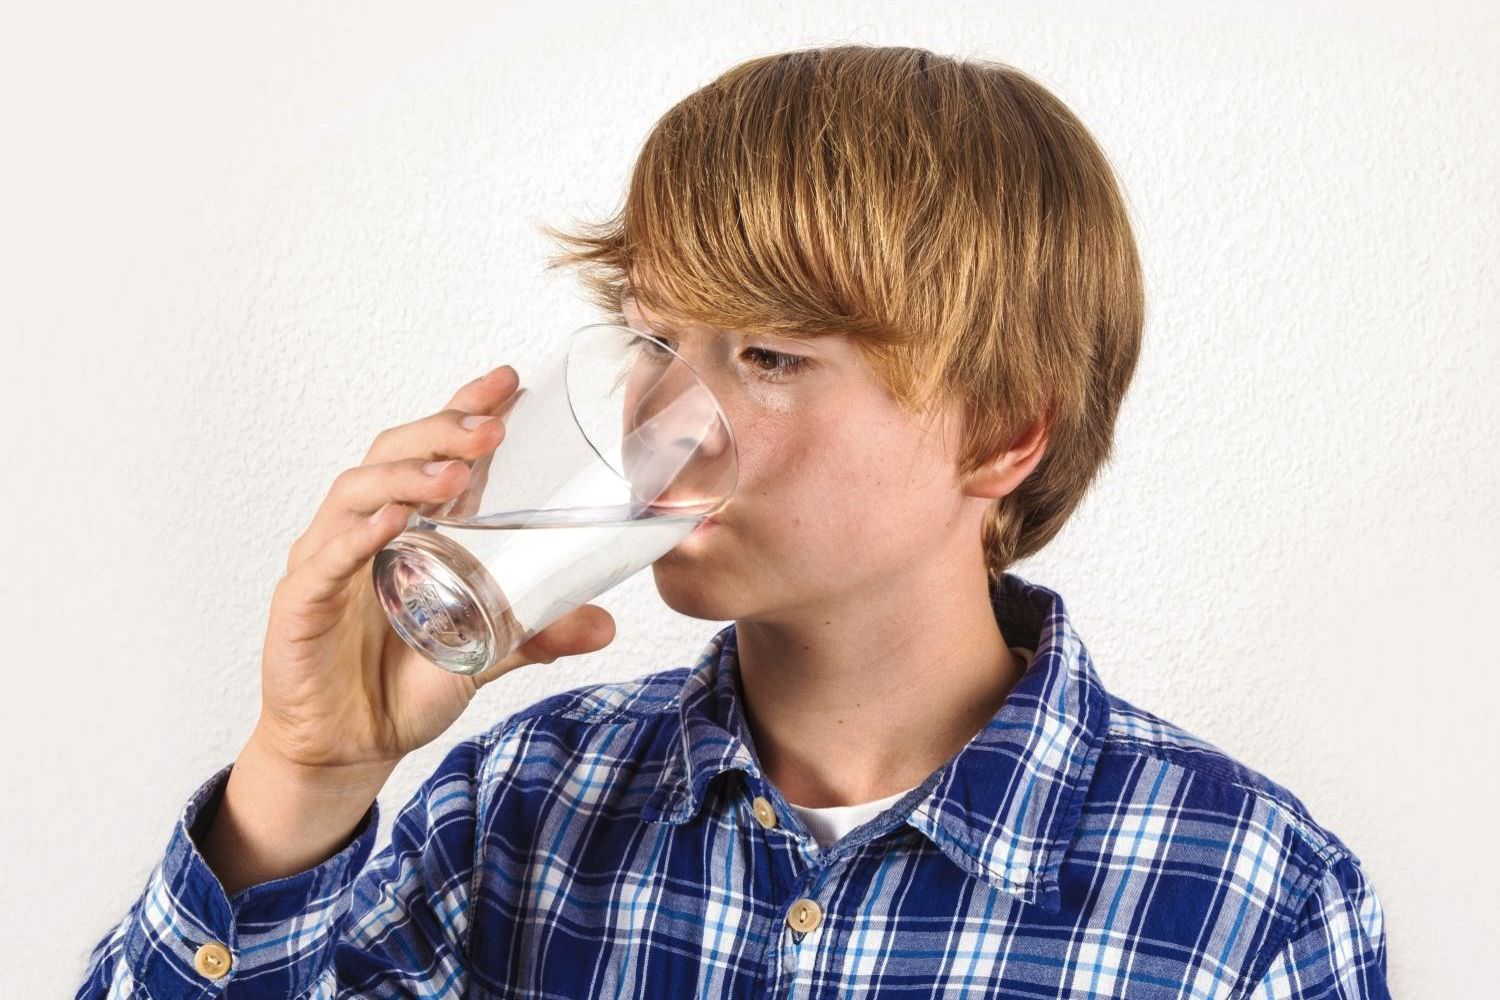 Bild zeigt: Ein Junge trinkt Wasser aus einem Glas